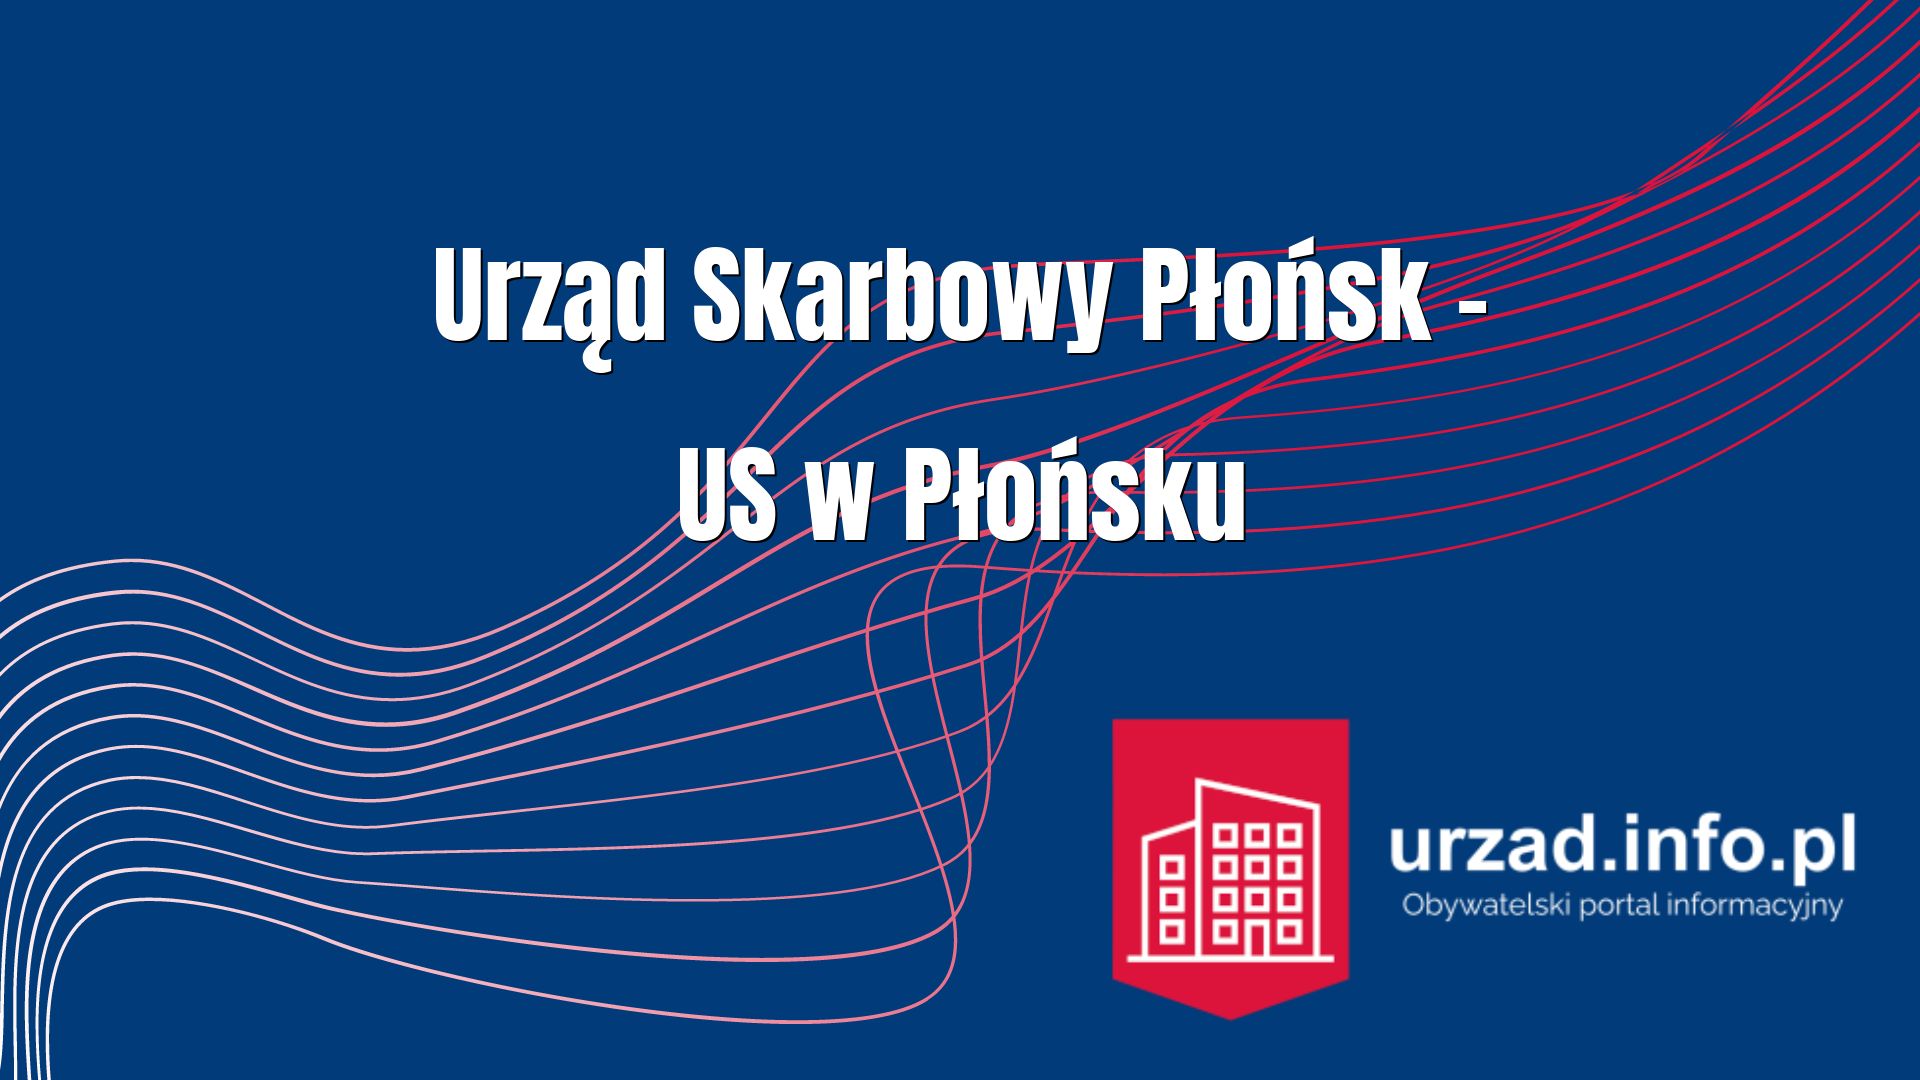 Urząd Skarbowy Płońsk – US w Płońsku